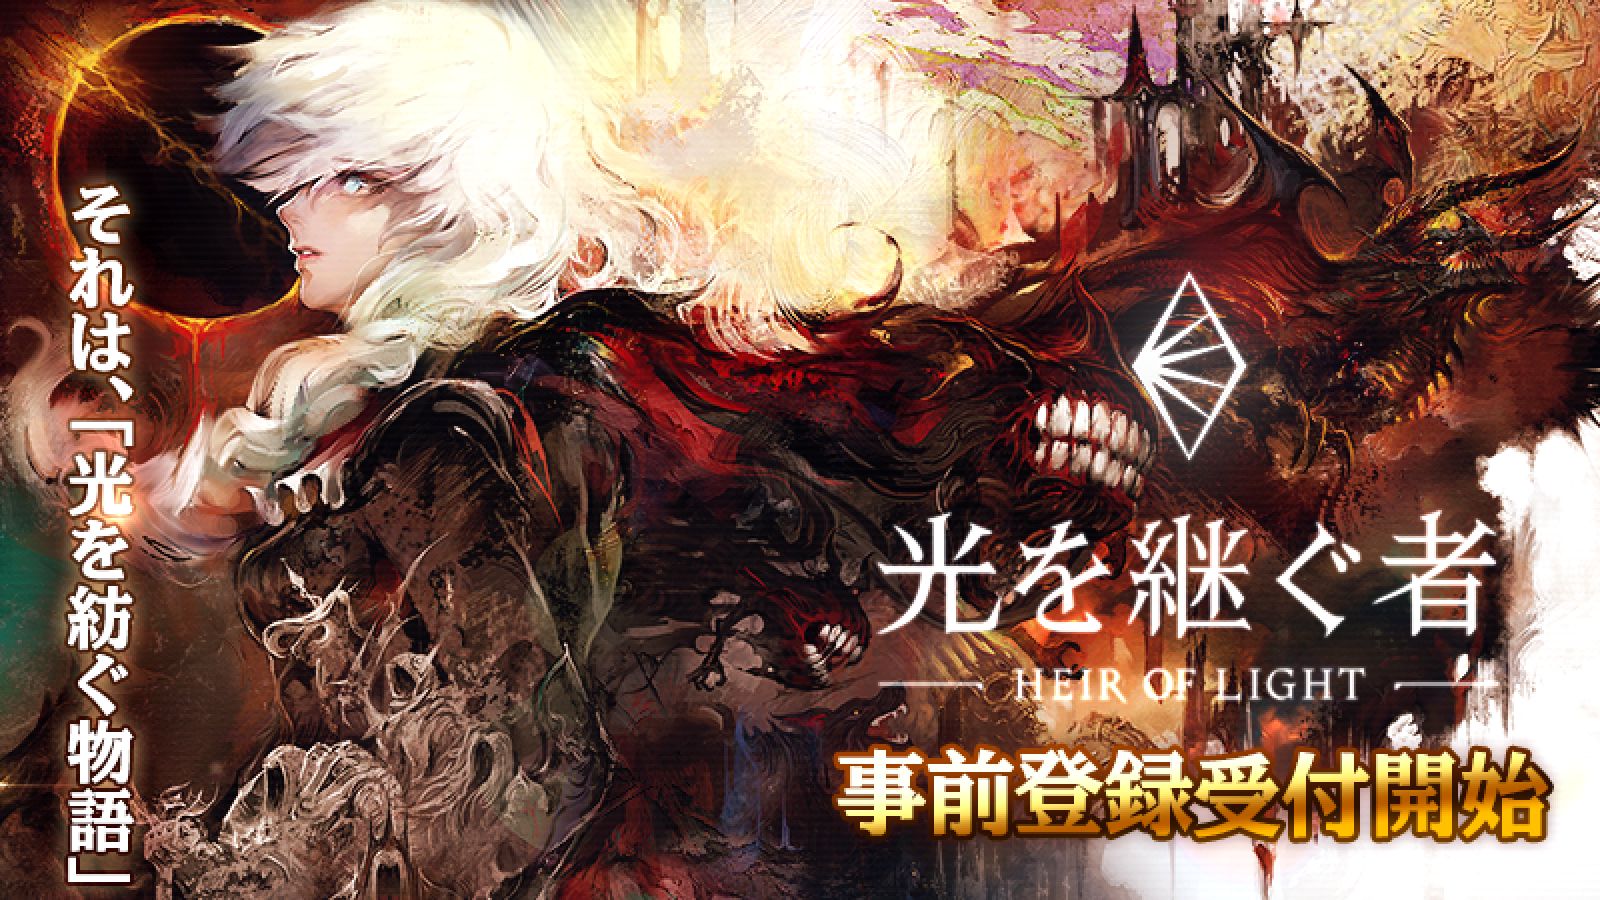 GAMEVIL COM2US JapanがダークファンタジーRPG『光を継ぐ者』の事前登録を開始！